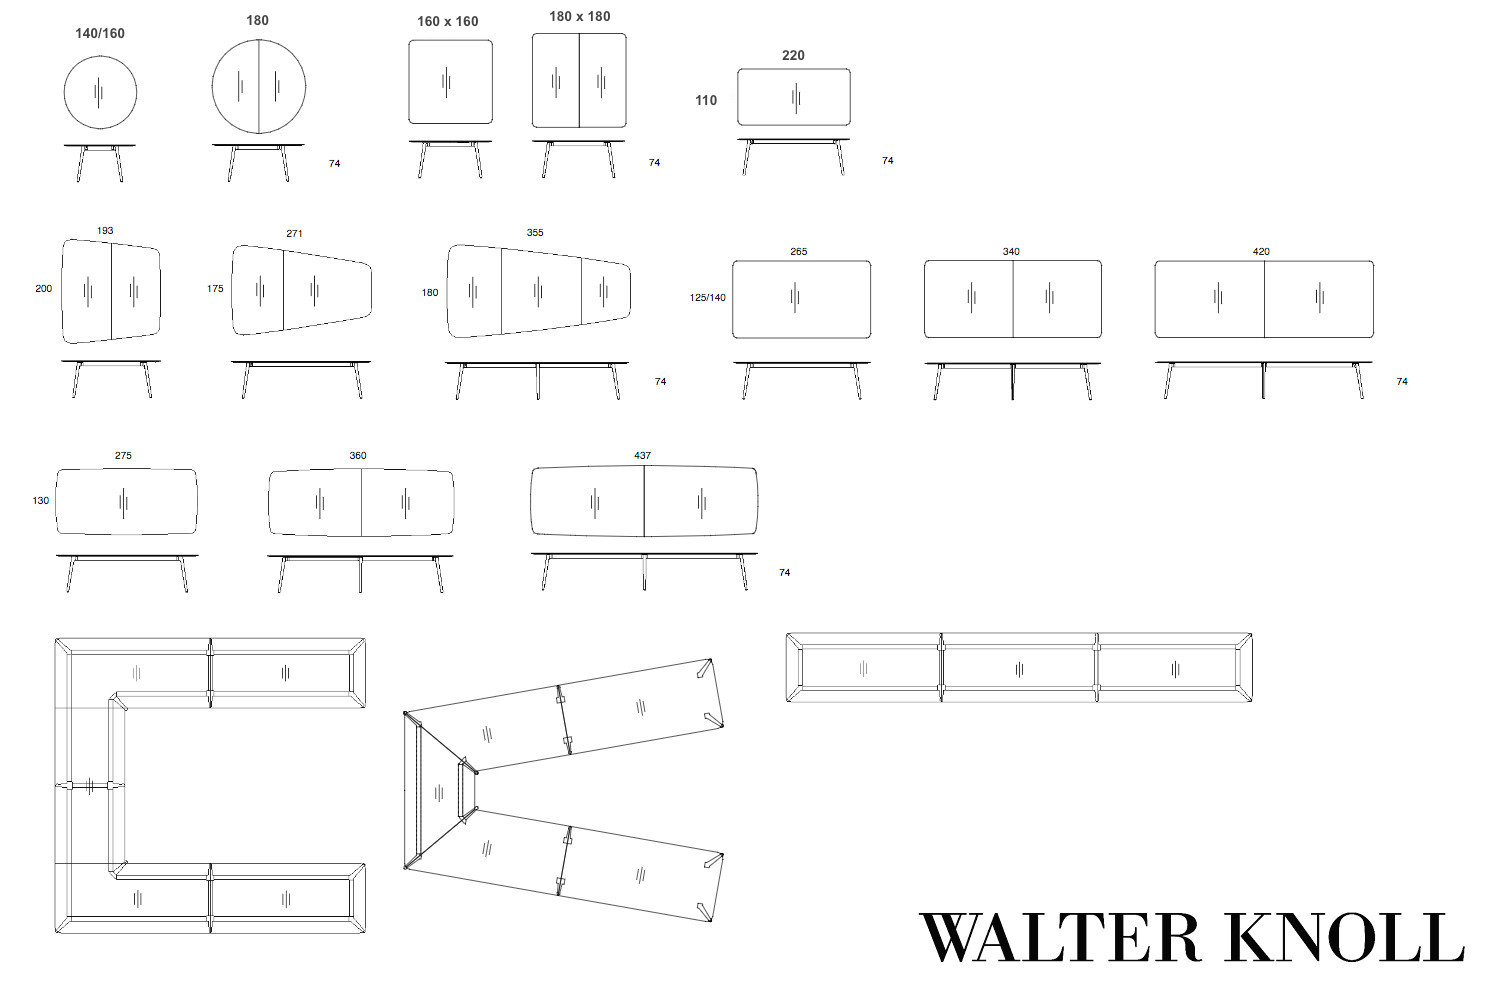 walter knoll keypiece vergadertafel afmetingen configuraties